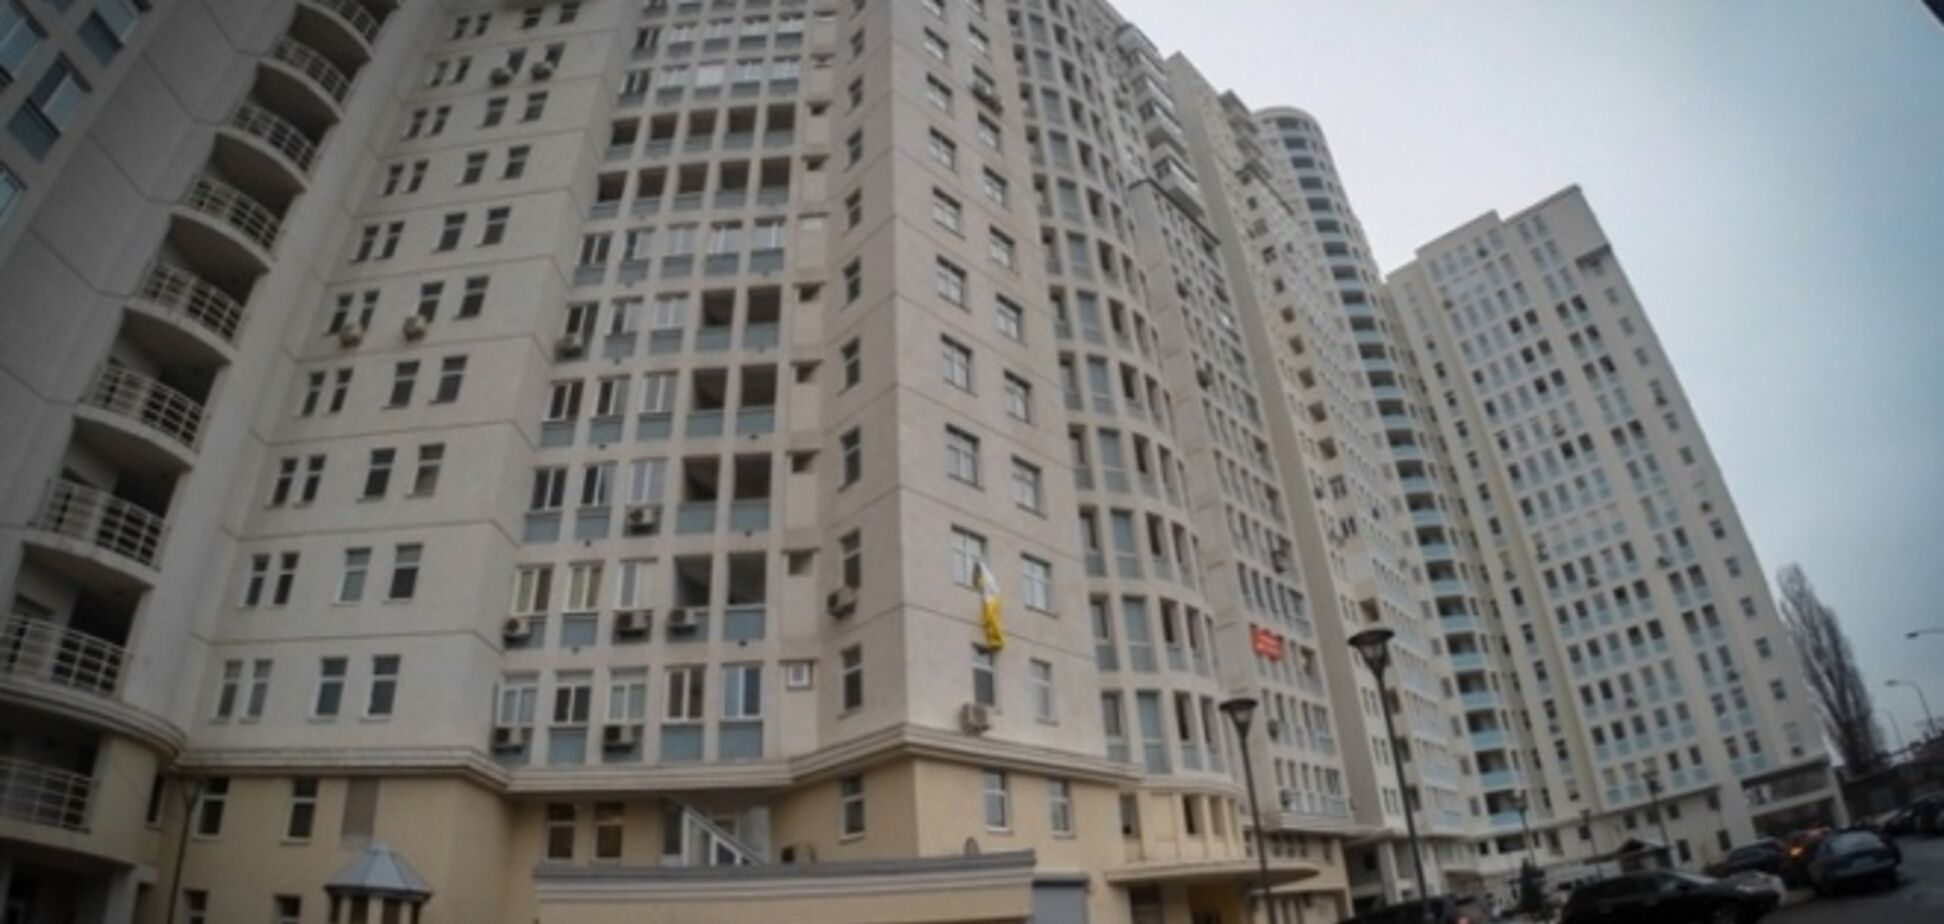 На беглого Ставицкого и его семью в Киеве записано 12 квартир, 7 гаражей и 3-этажный особняк - СМИ